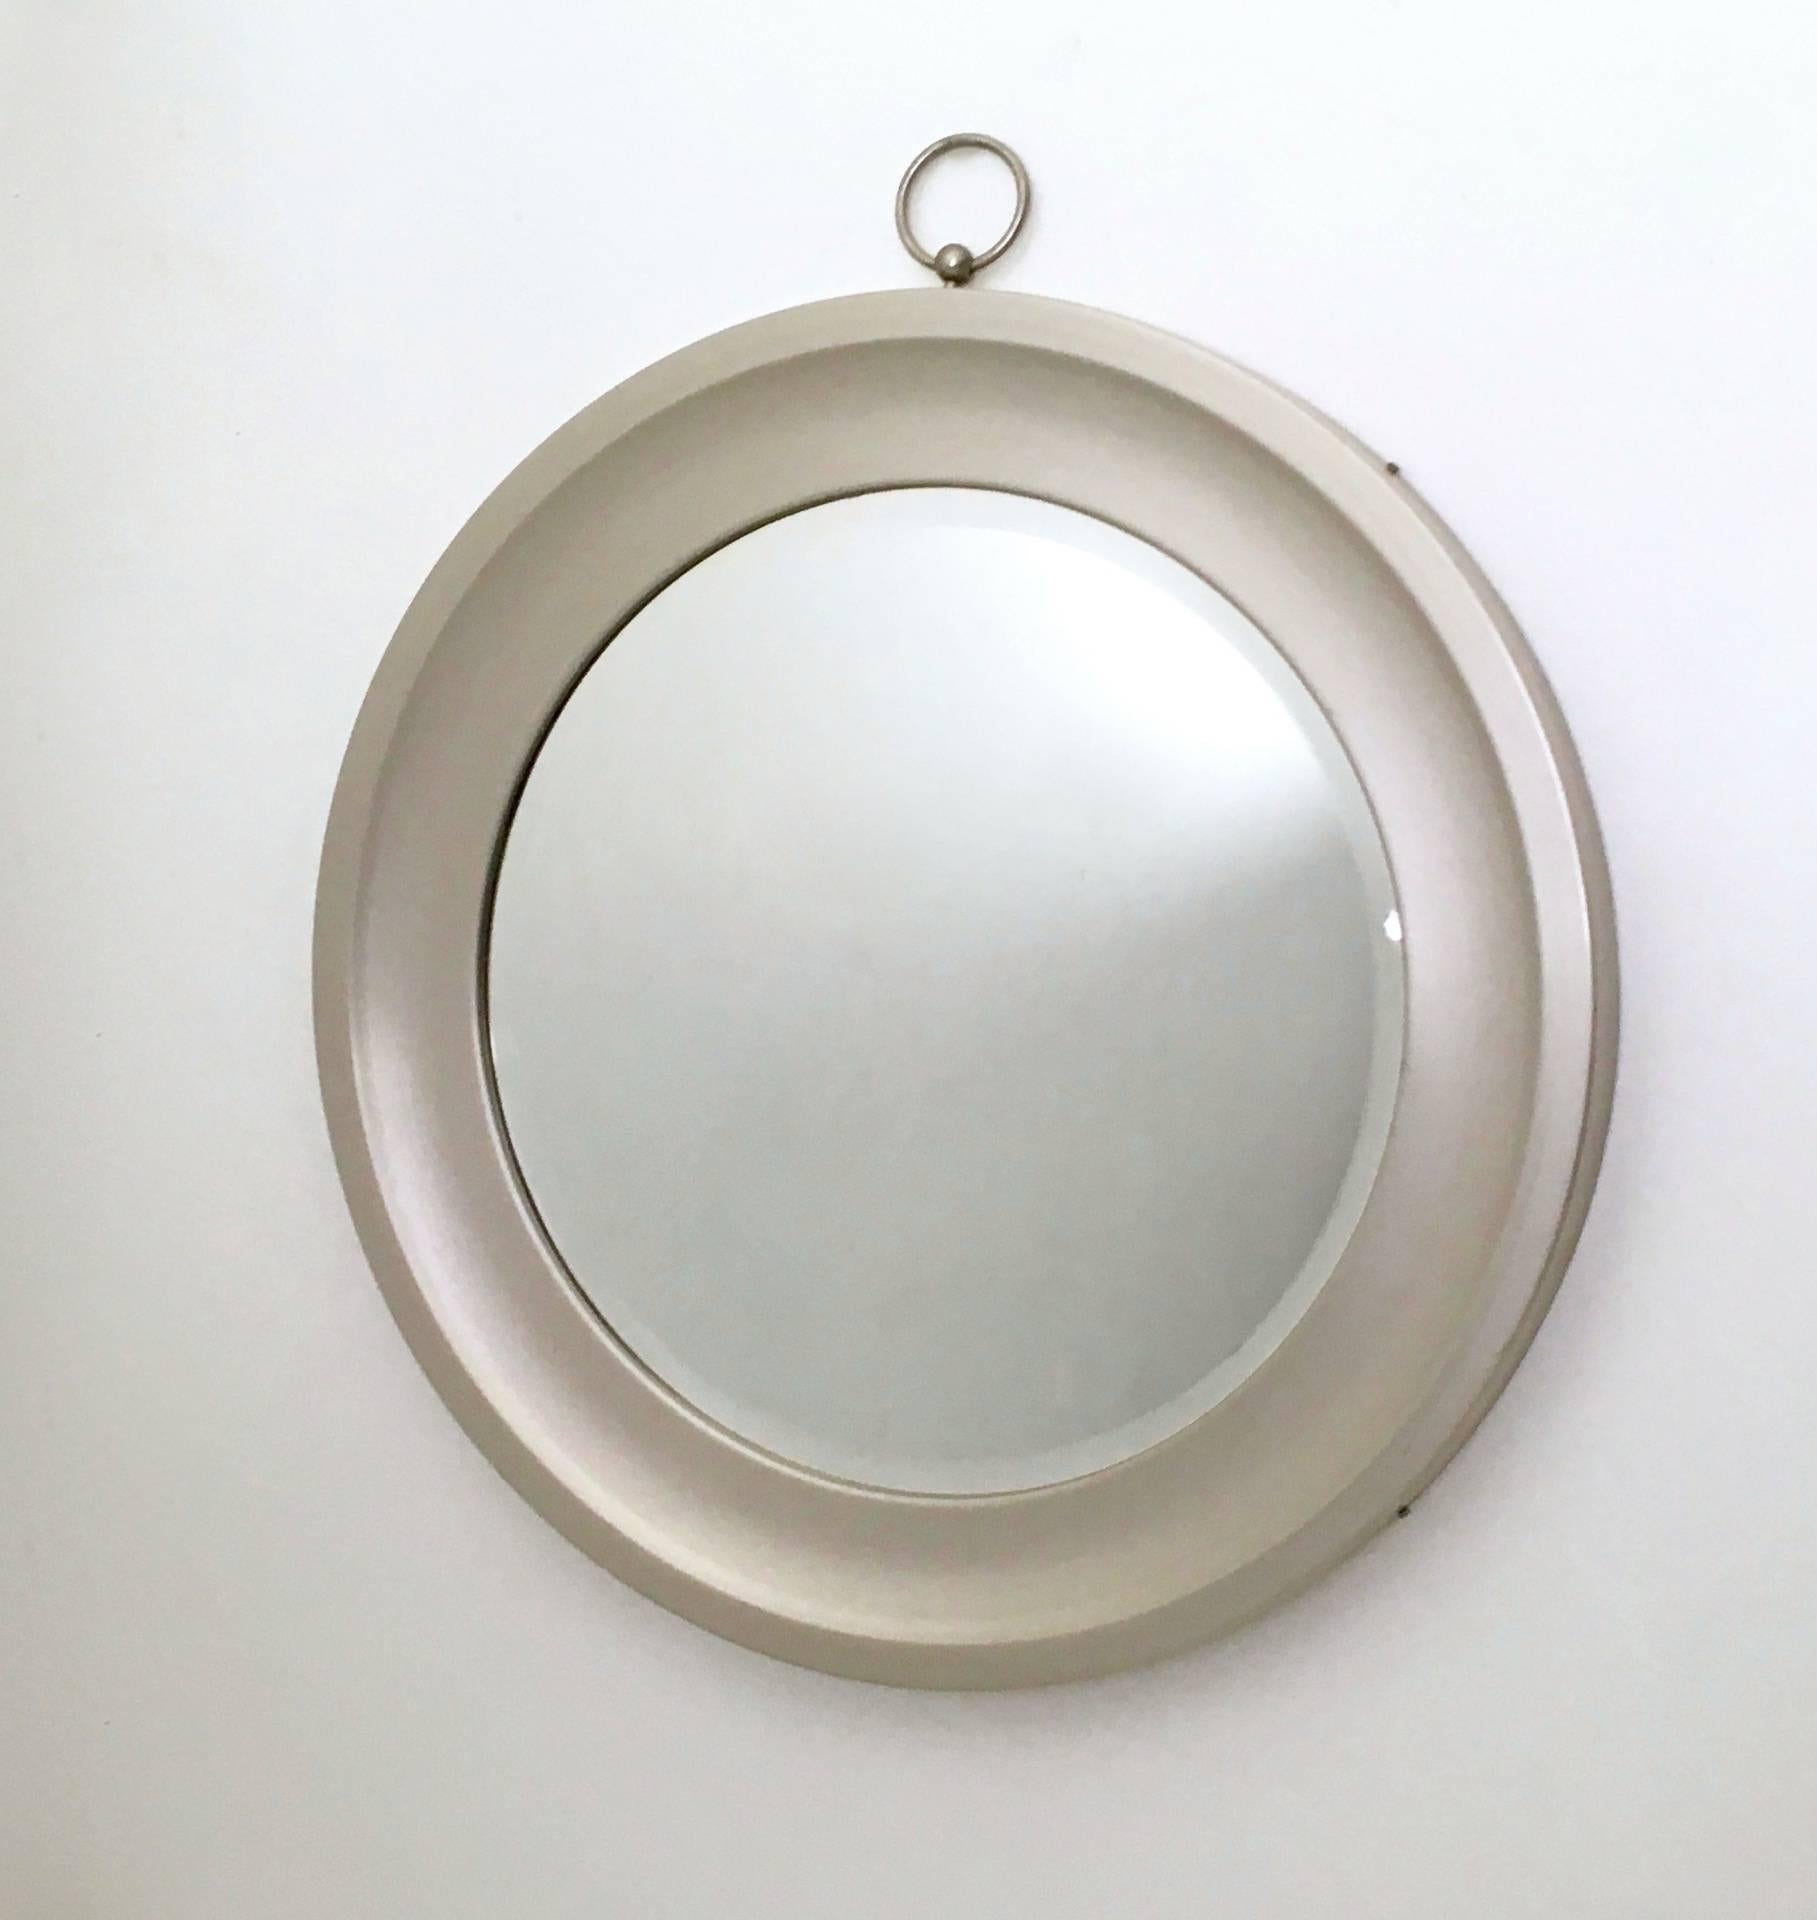 Hergestellt in Italien, 1970er Jahre. 
Dieser Spiegel hat einen Stahlrahmen.
Da es sich um ein Vintage-Stück handelt, kann es leichte Gebrauchsspuren aufweisen, aber es ist in einem ausgezeichneten Originalzustand und bereit, ein Stück in einer